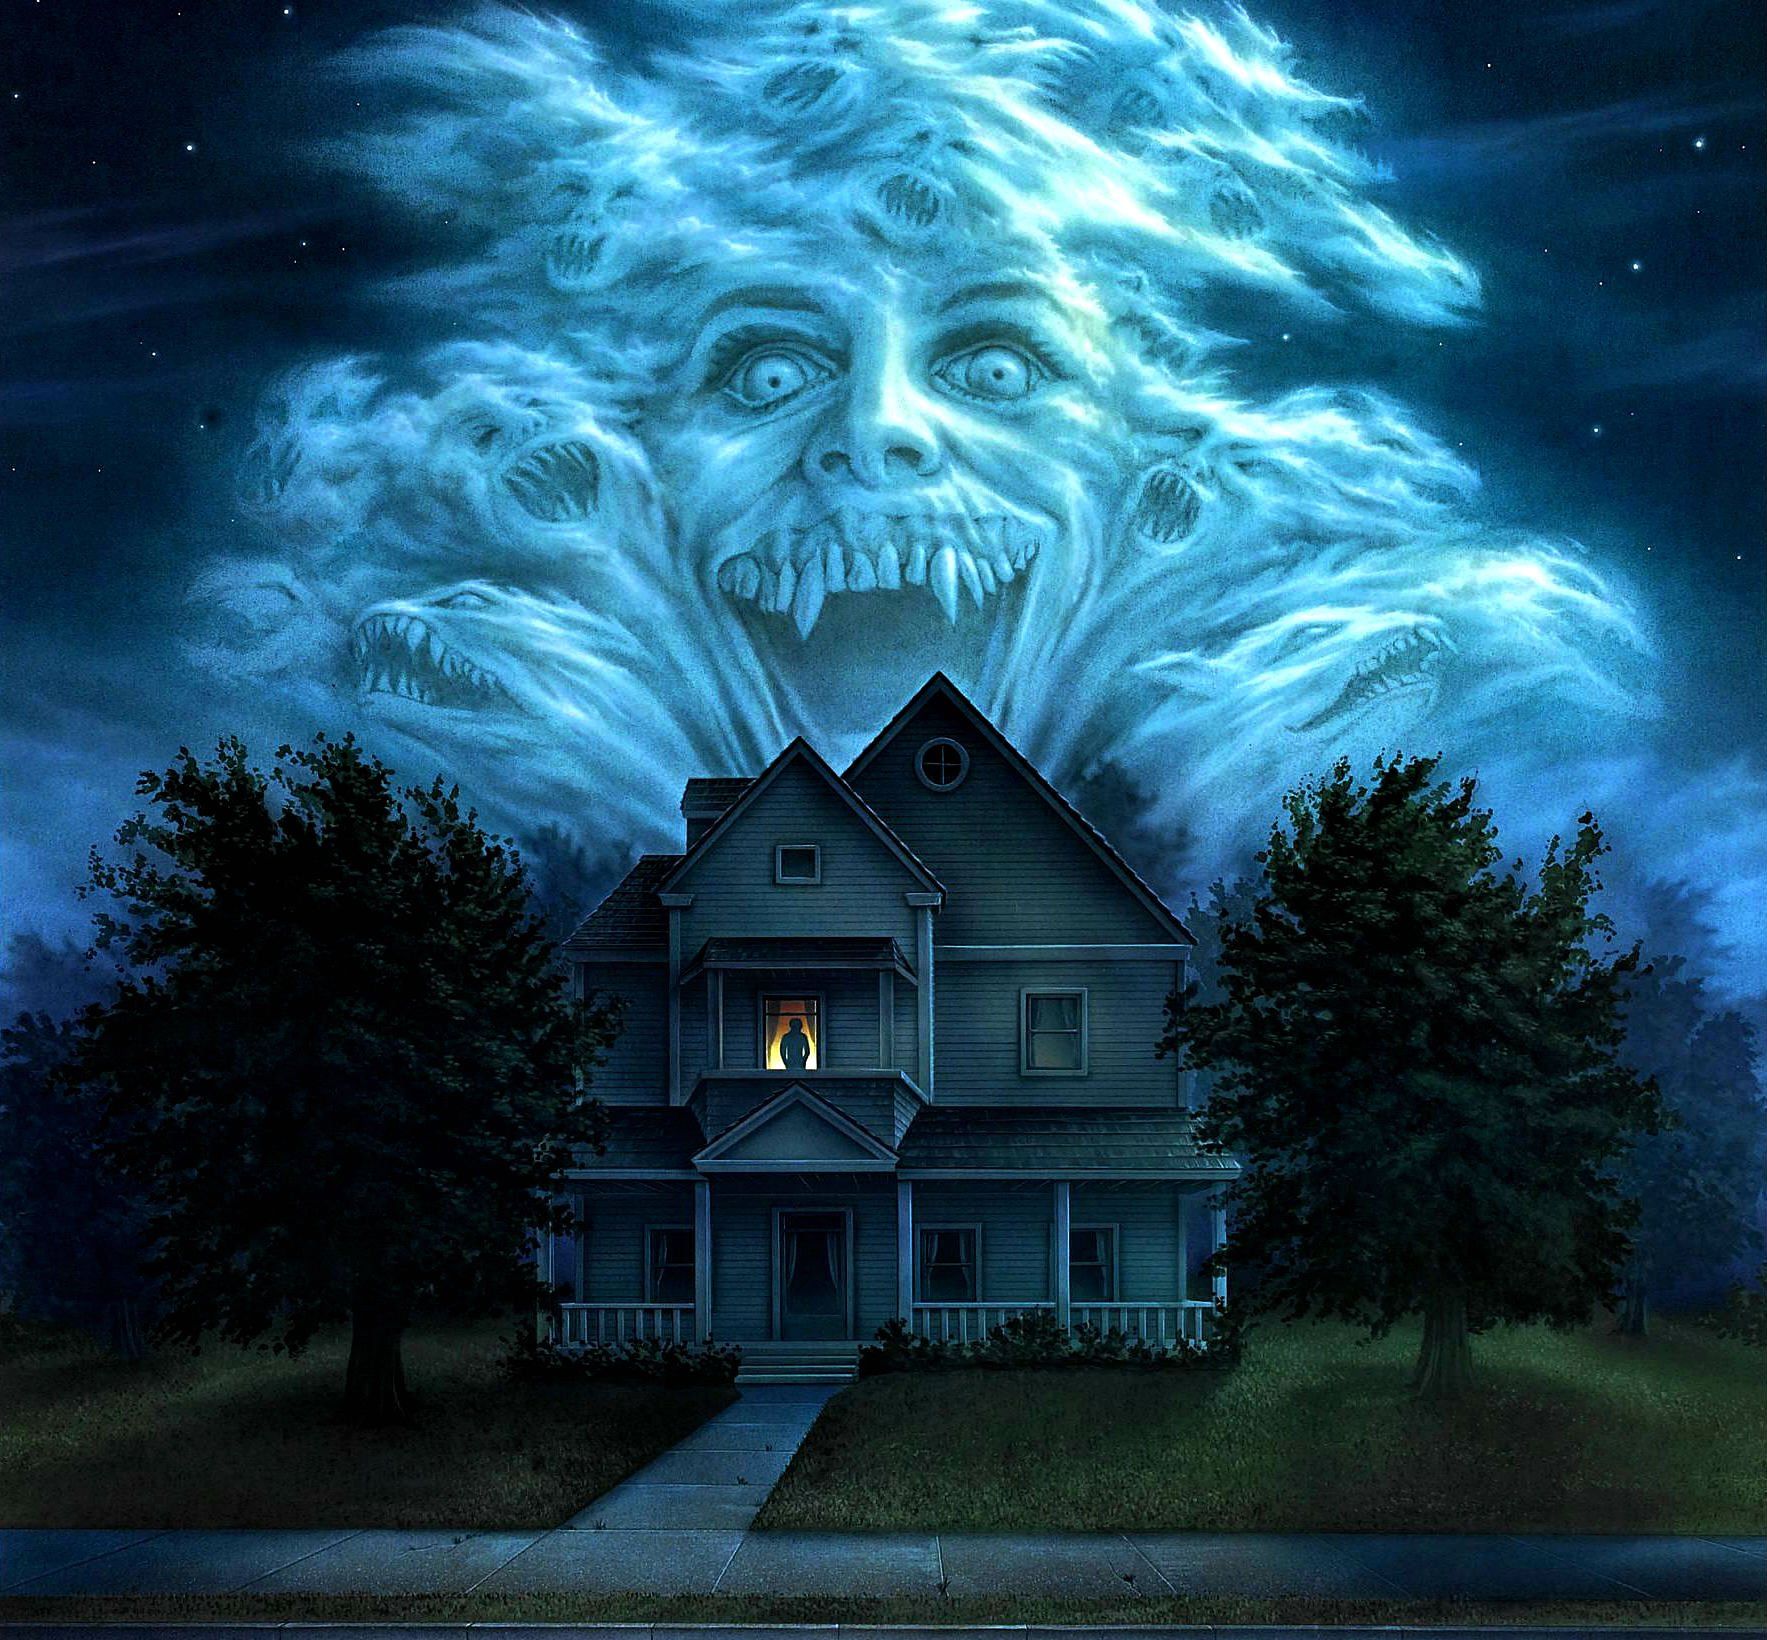 FRIGHT NIGHT comedy horror dark movie film poster halloween haunted vampire wallpaperx1640